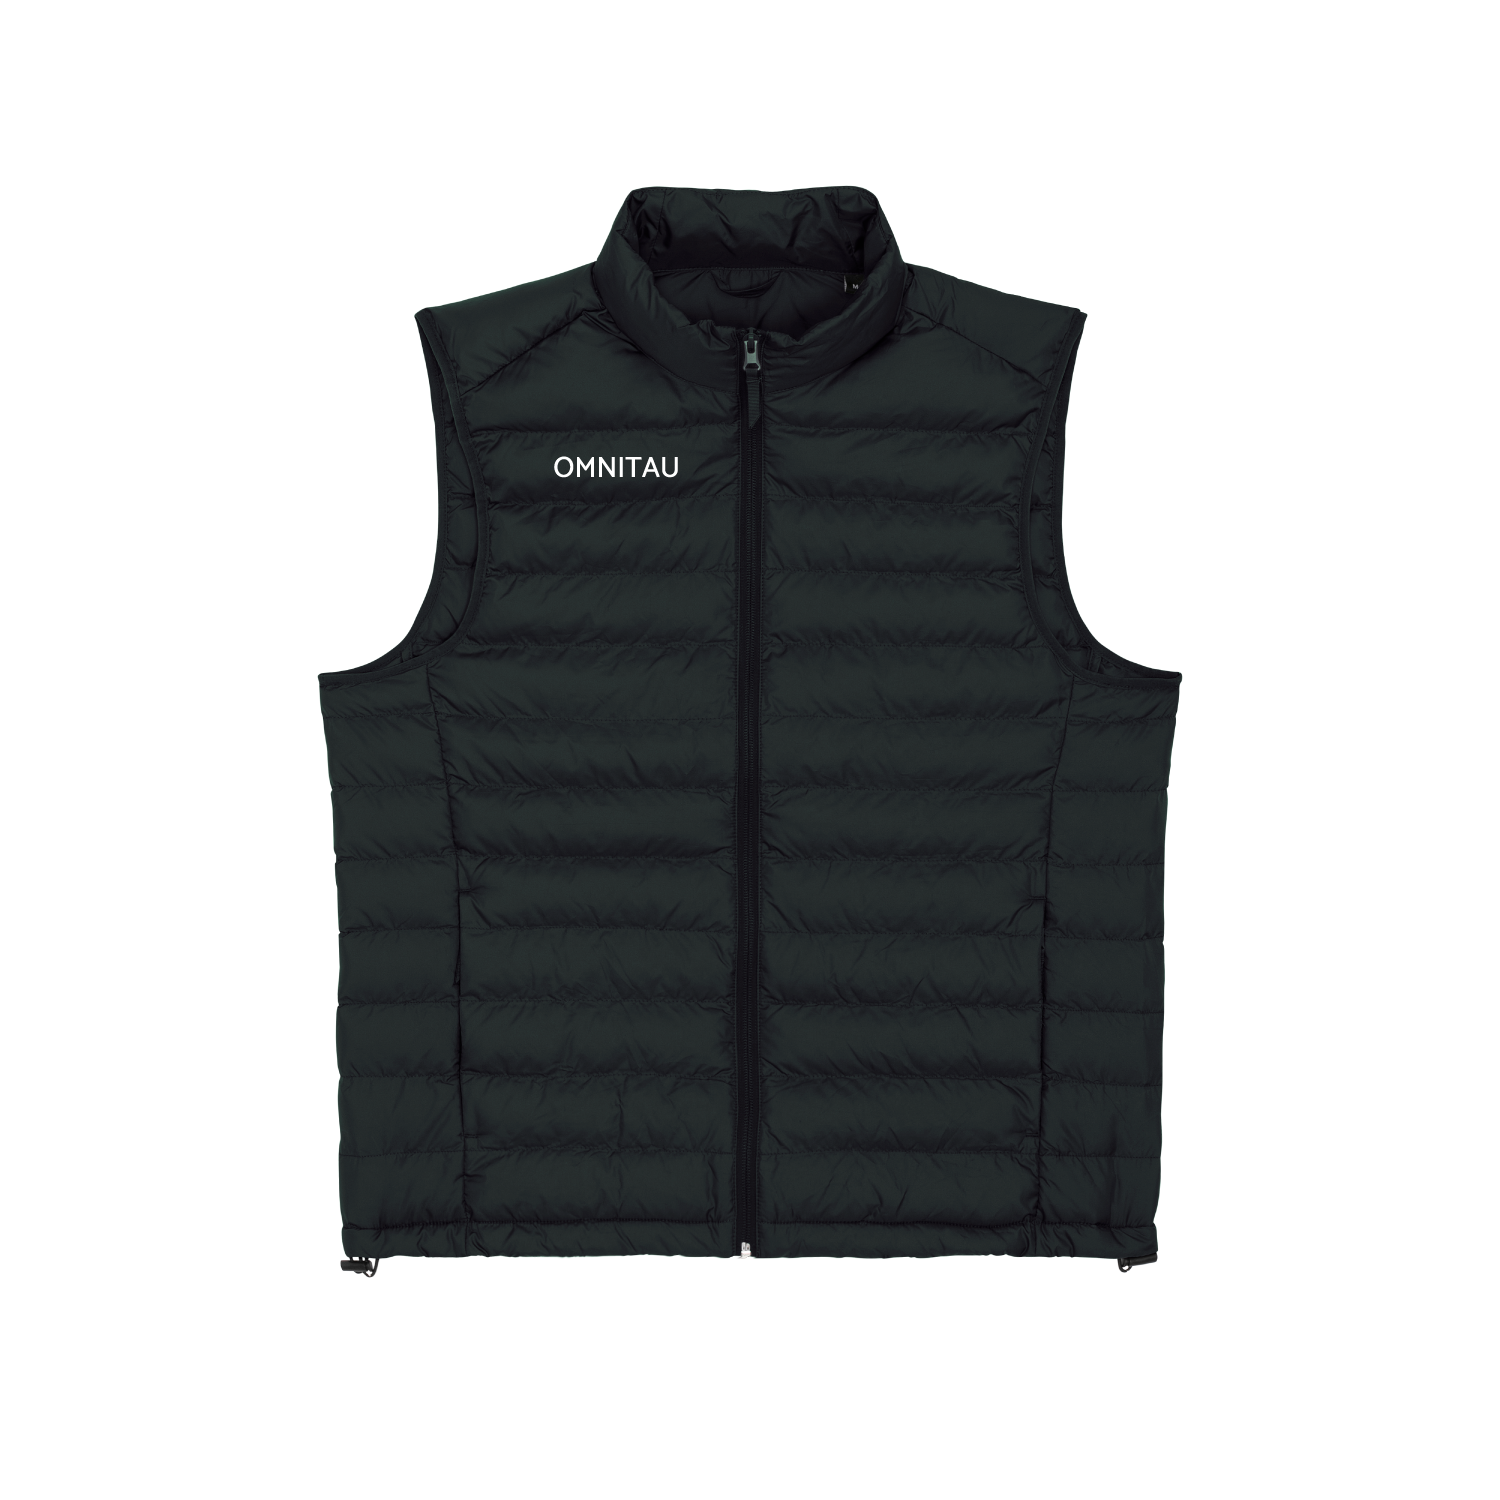 Uitdaging ziekte Hoopvol Omnitau Men's Team Sports Recycled Padded Gilet - Black – Omnitau Clothing  Team Sports